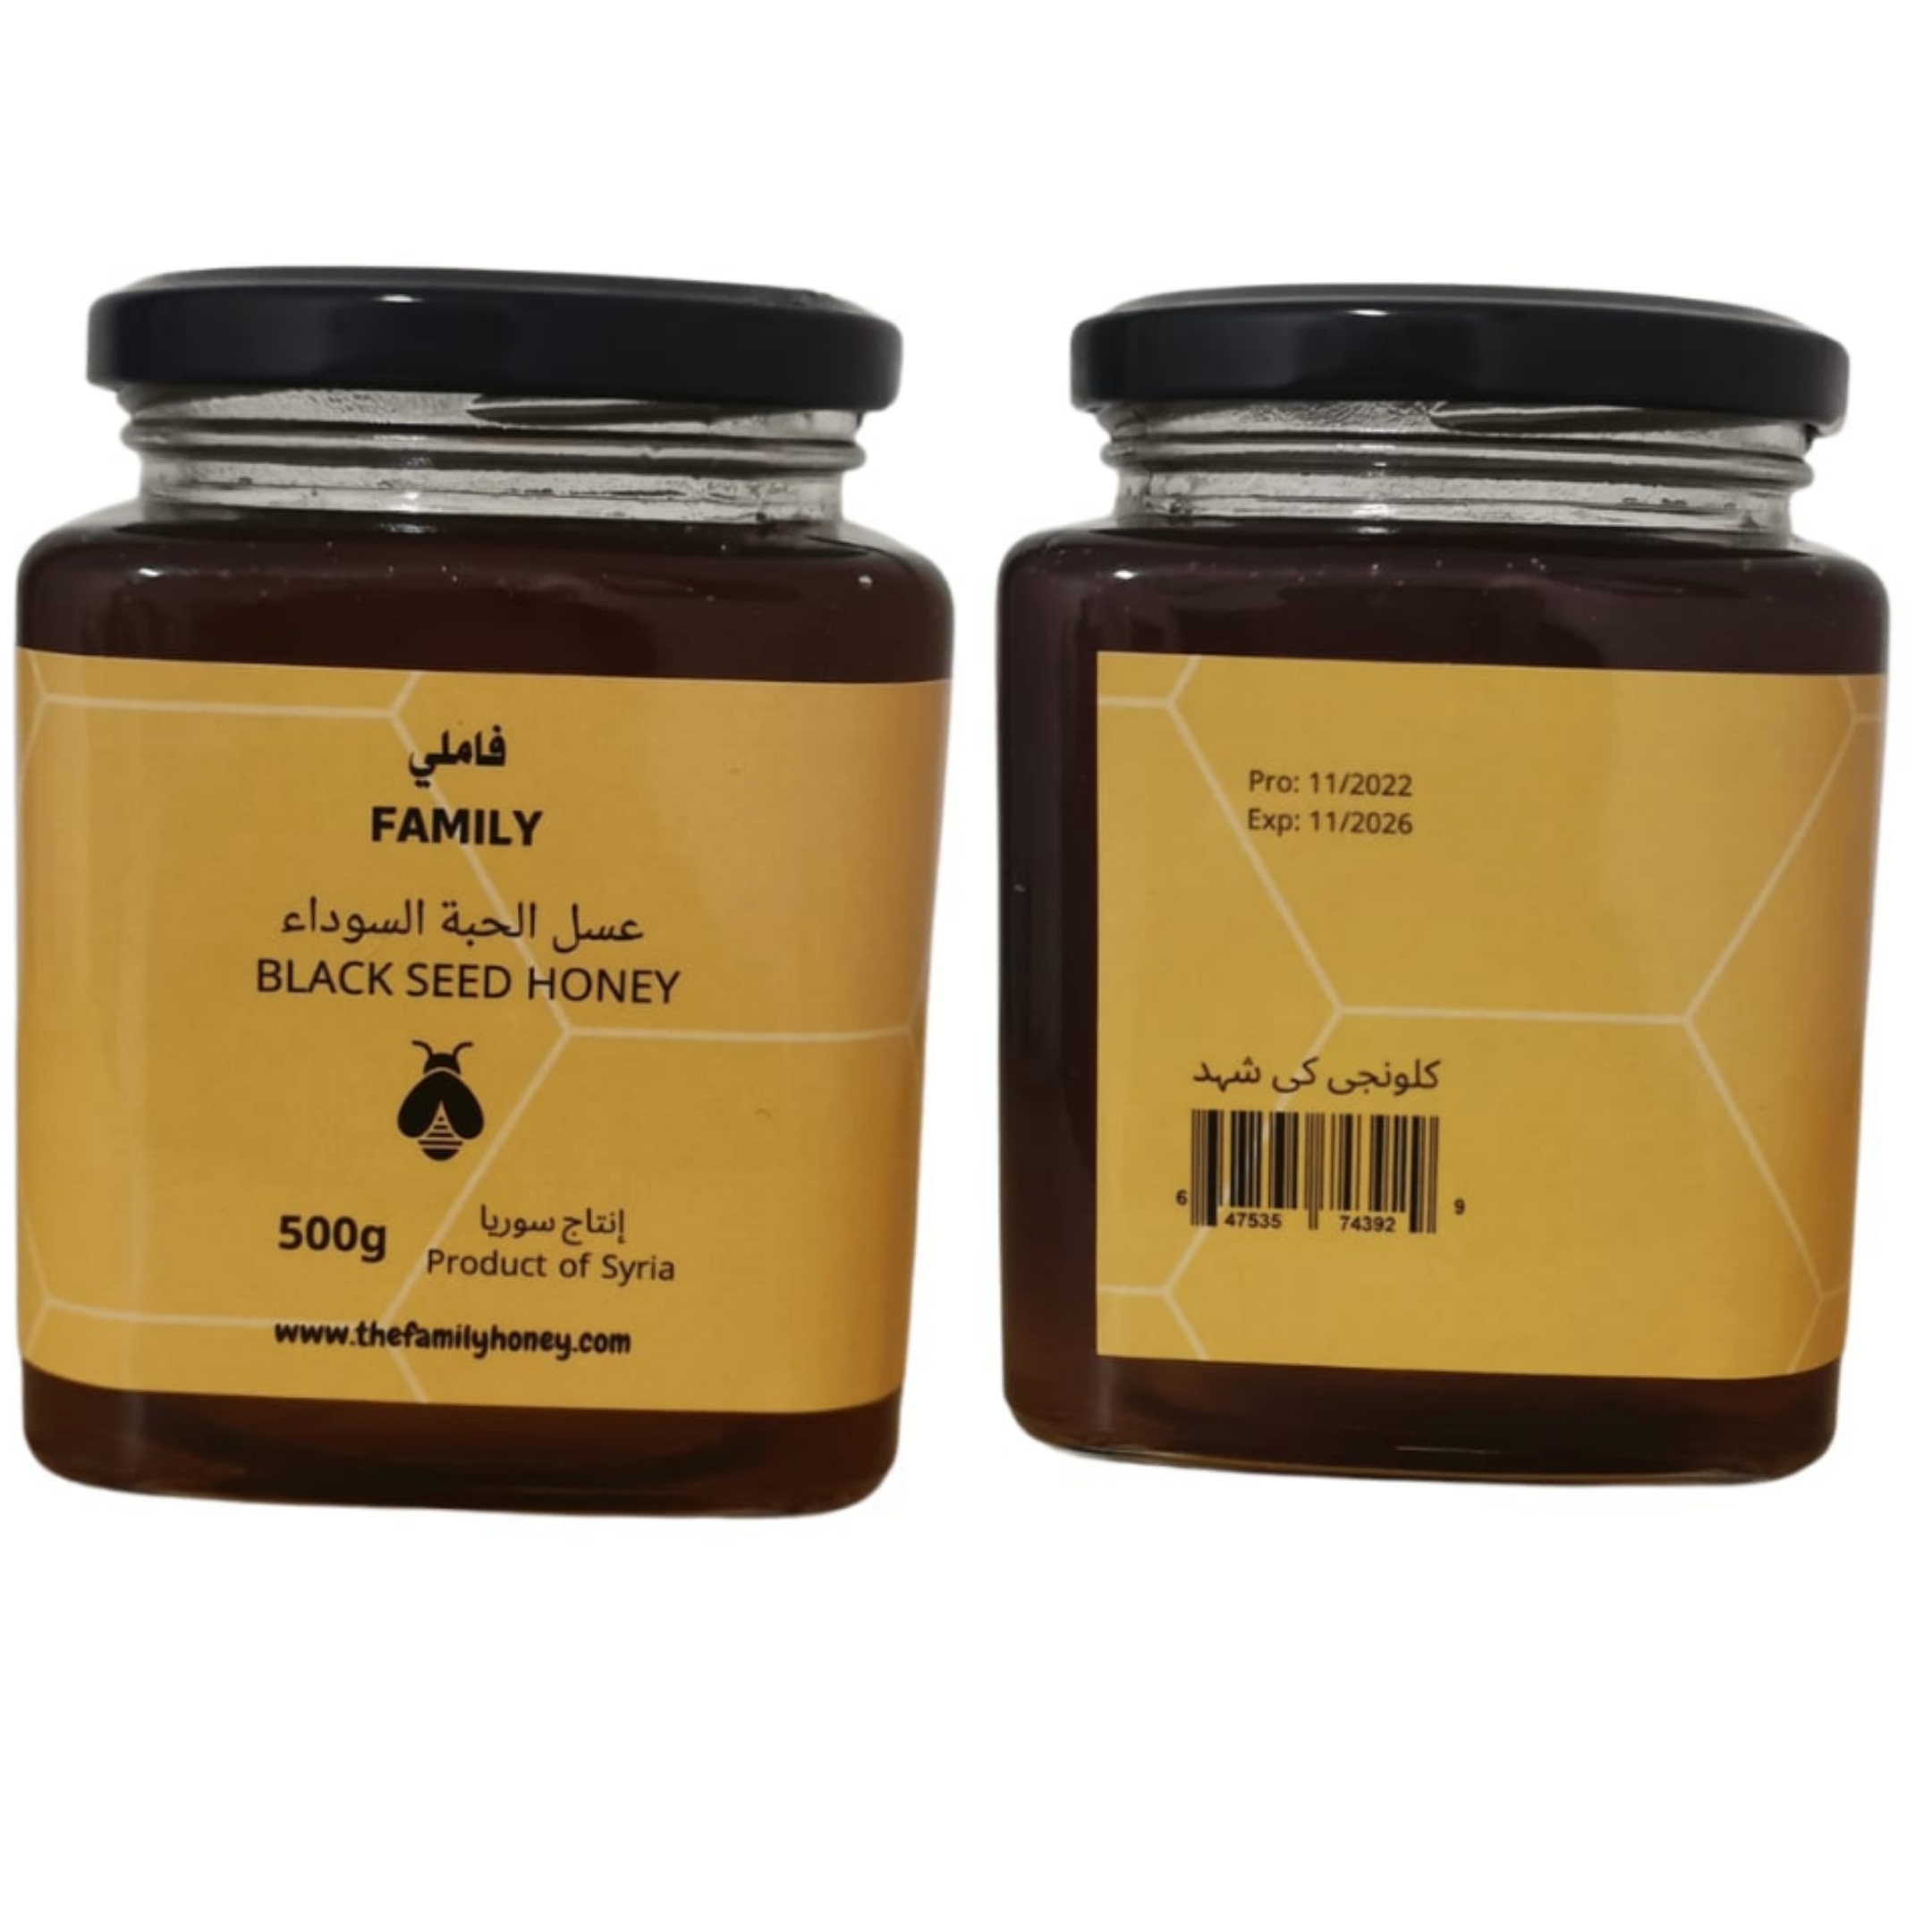 Family black seed honey, 500g